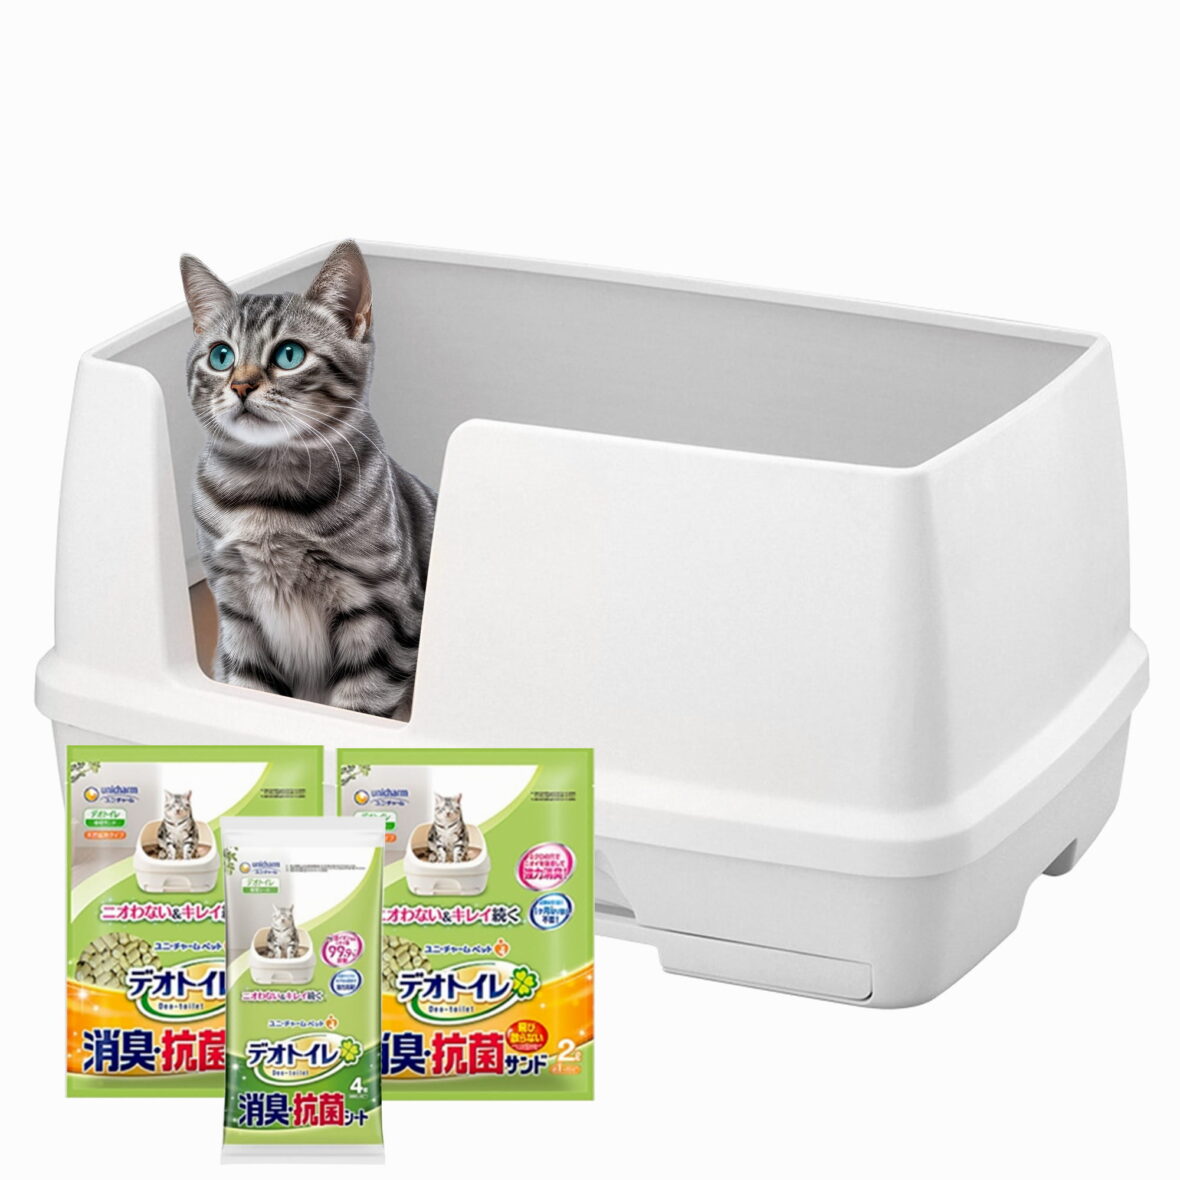 XL Cat Litter Box